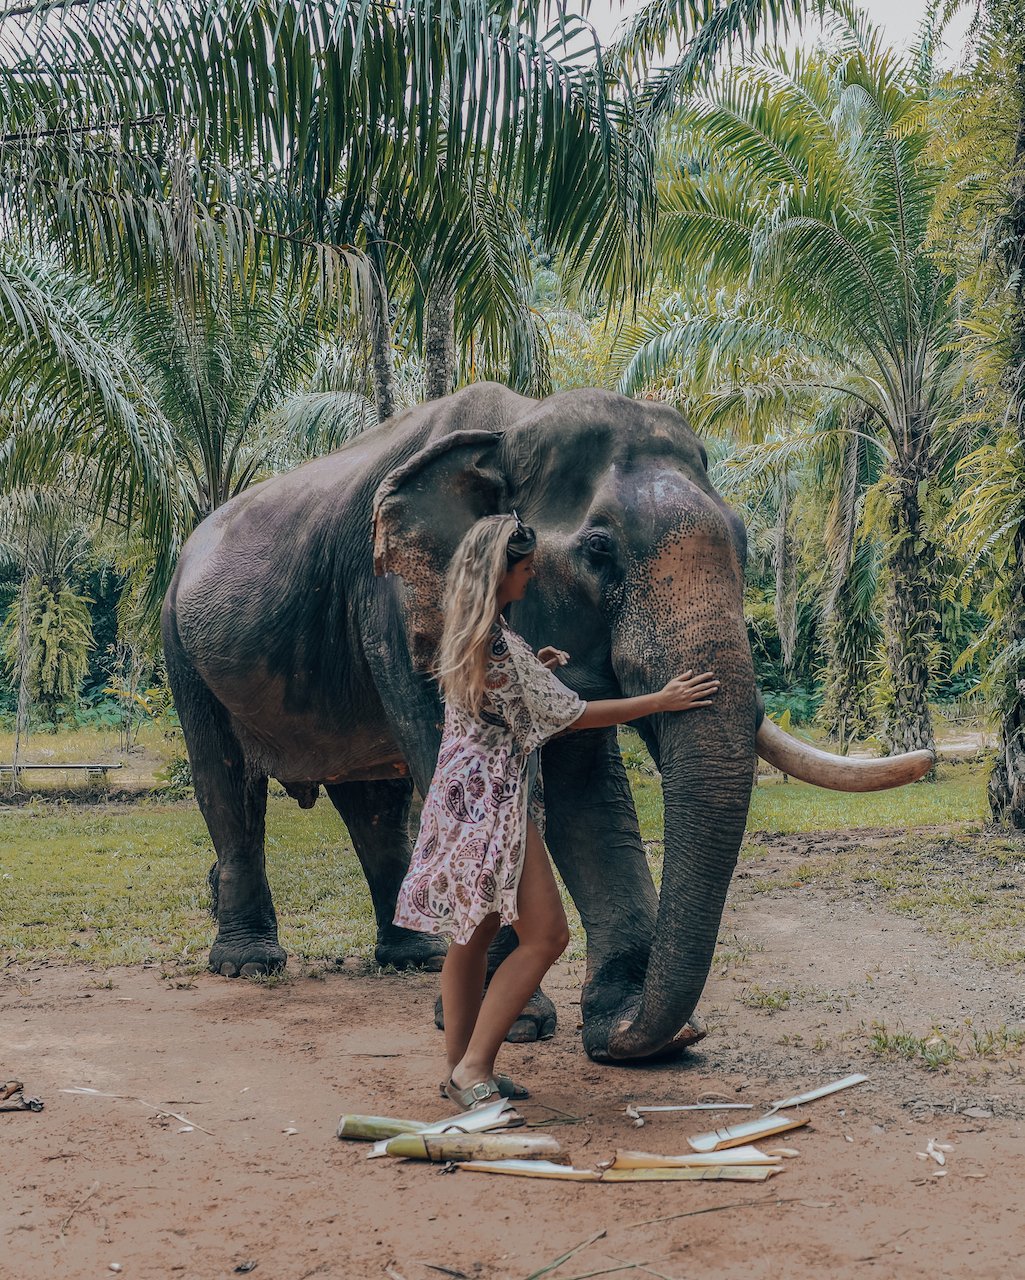 My first encounter with an elephant - Sonchana Farm - Khlong Phanom National Park - Thailand